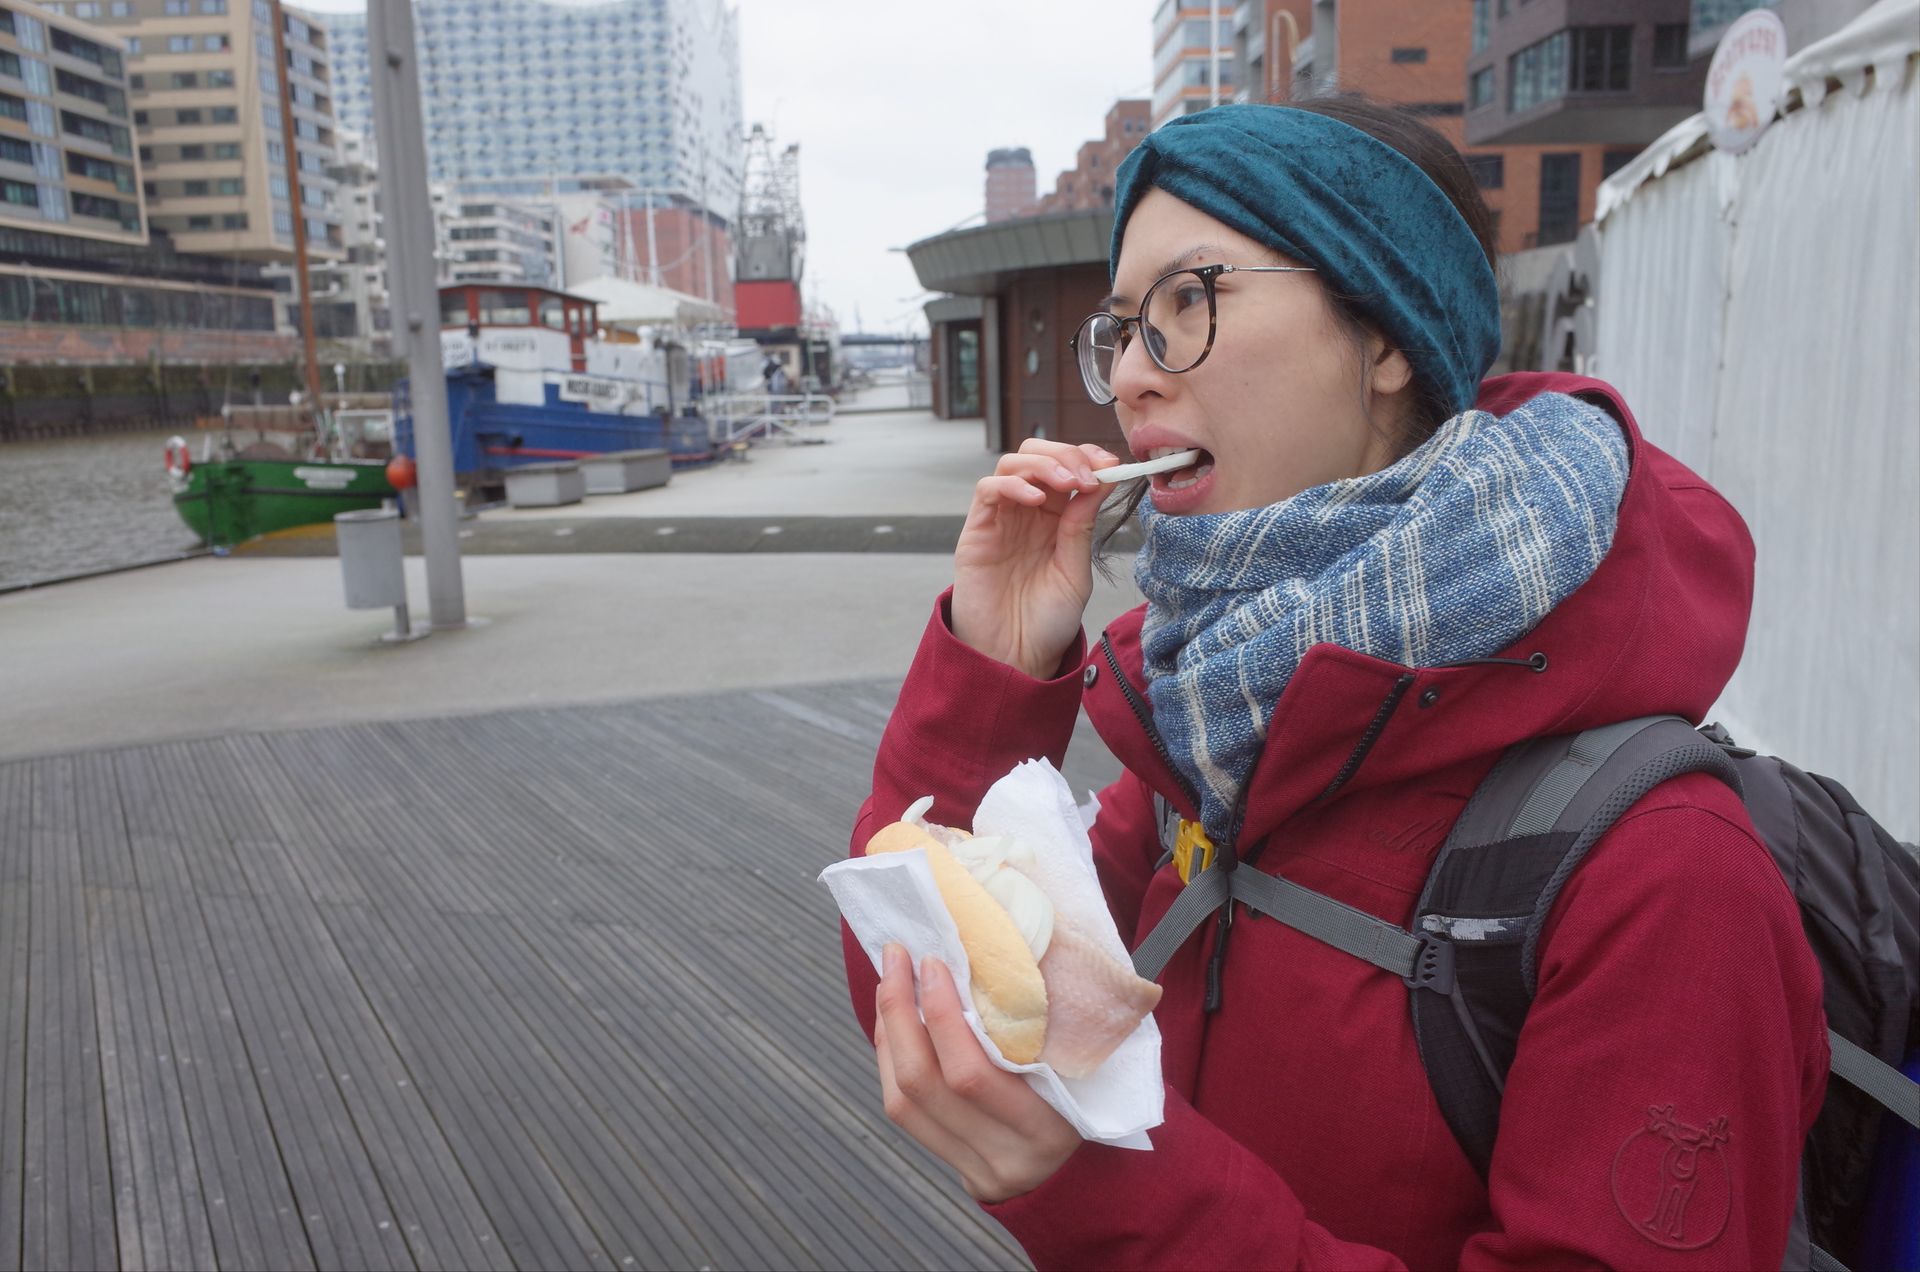 Clara mange un Fischbrötchen à Hambourg